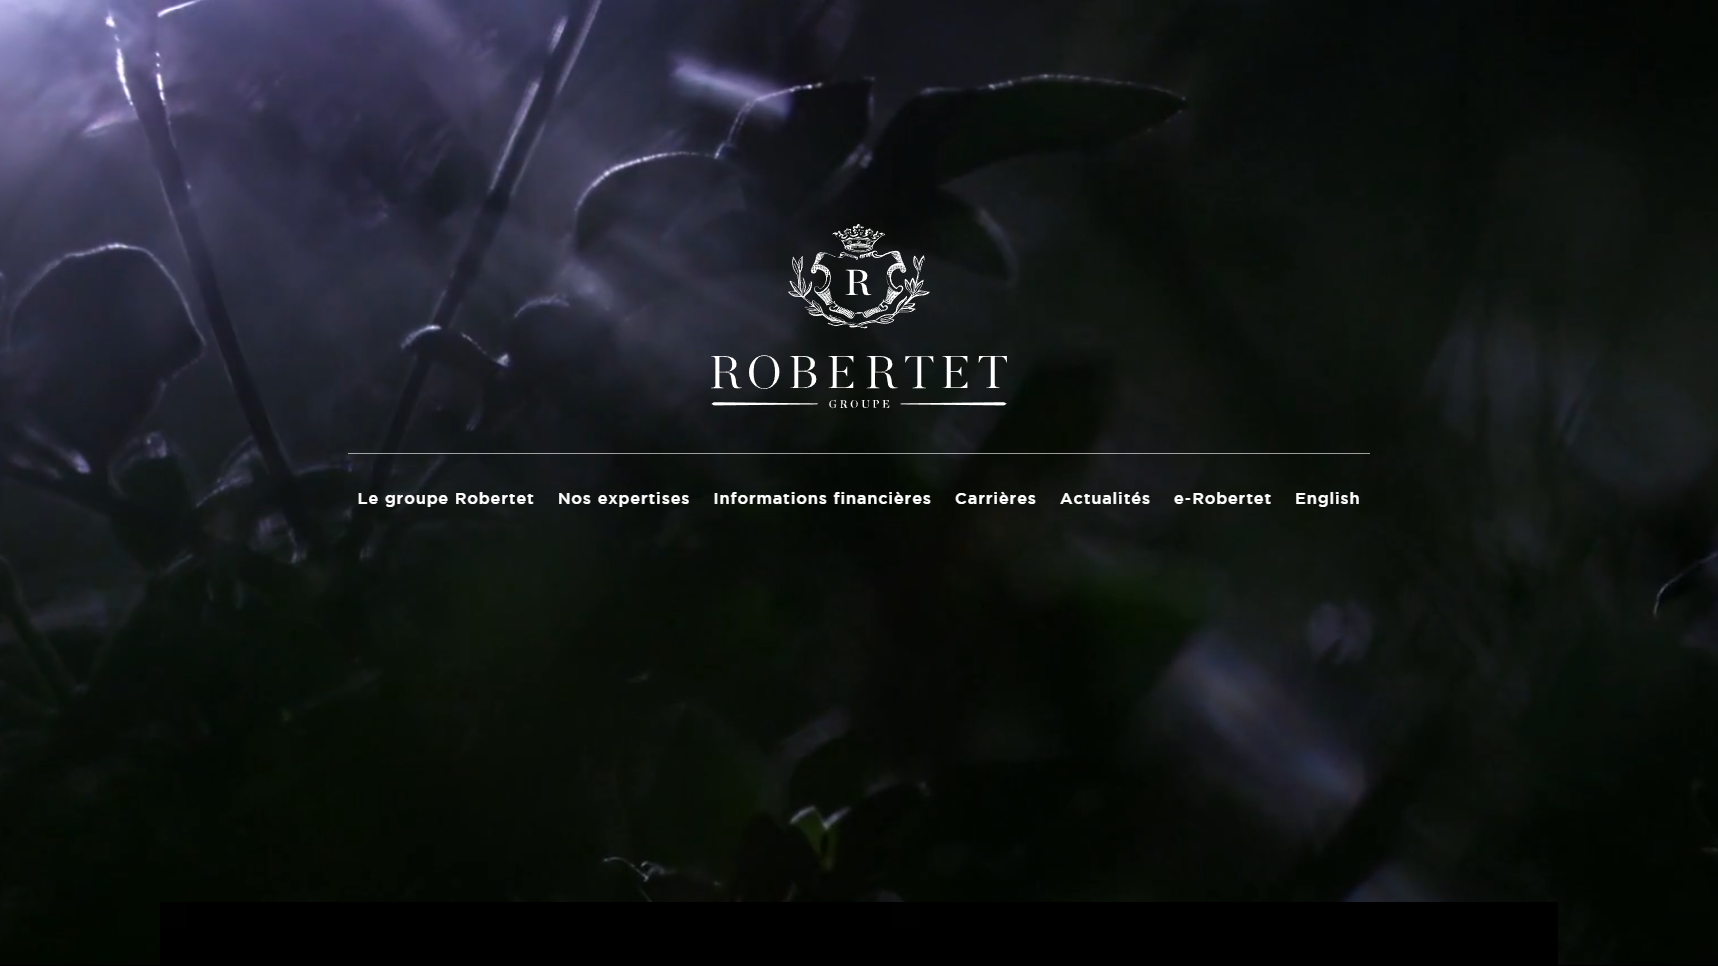 Robertet - Perfume Manufacturer